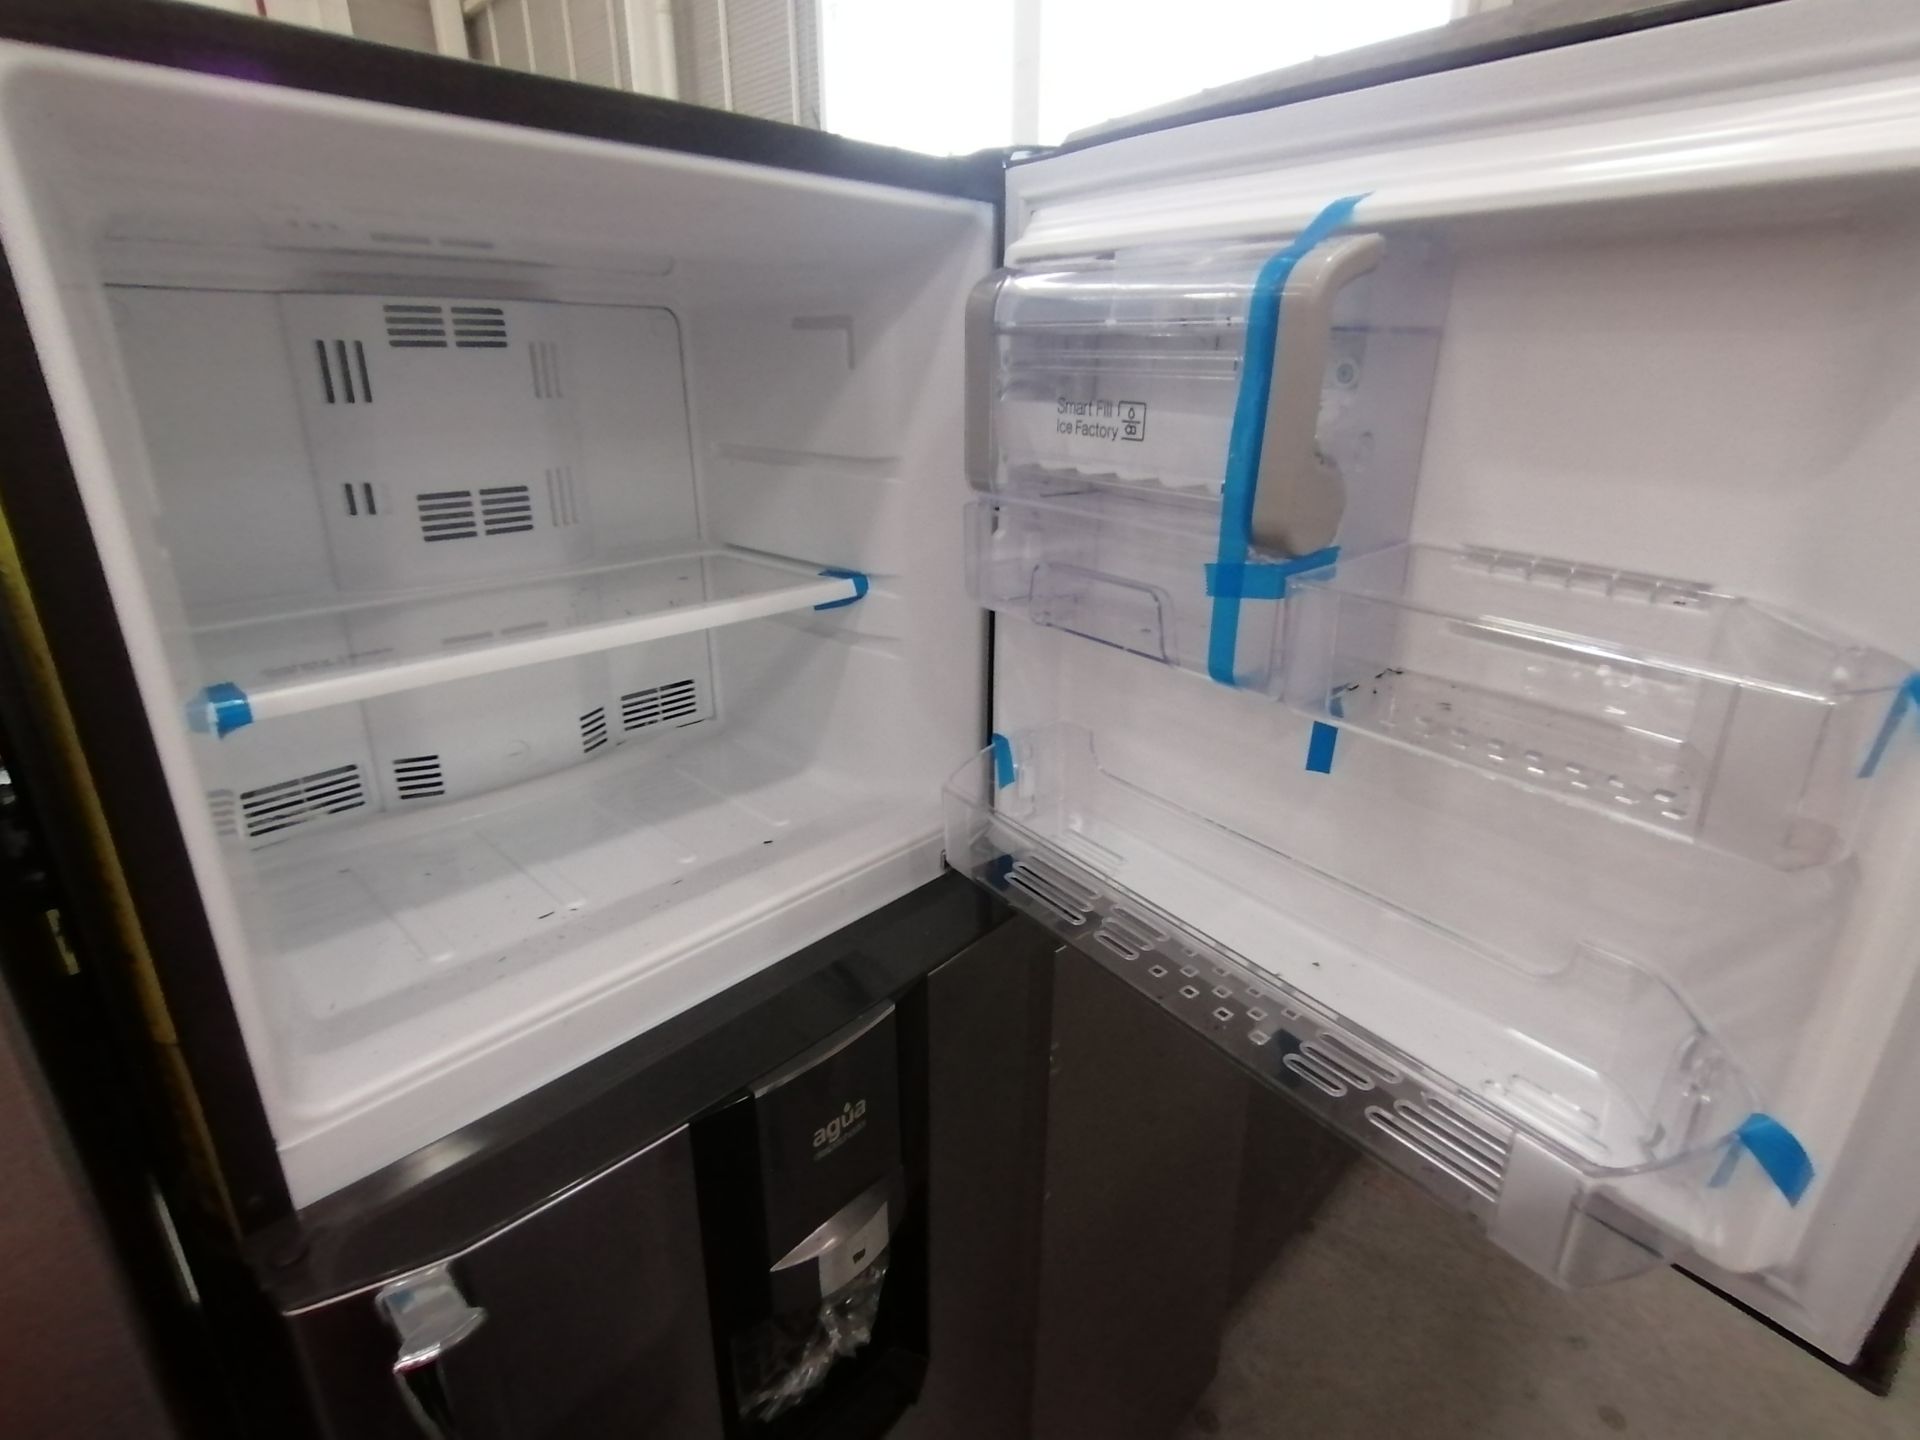 1 Refrigerador Marca Samsung, Modelo rf220fctas8, Serie BBR100057N, Color Gris, Golpeado, Favor de - Image 9 of 16